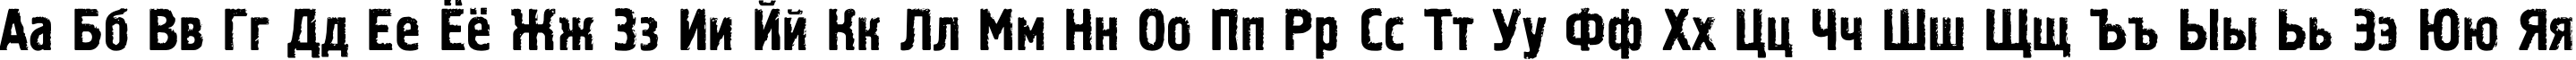 Пример написания русского алфавита шрифтом Pollock2C